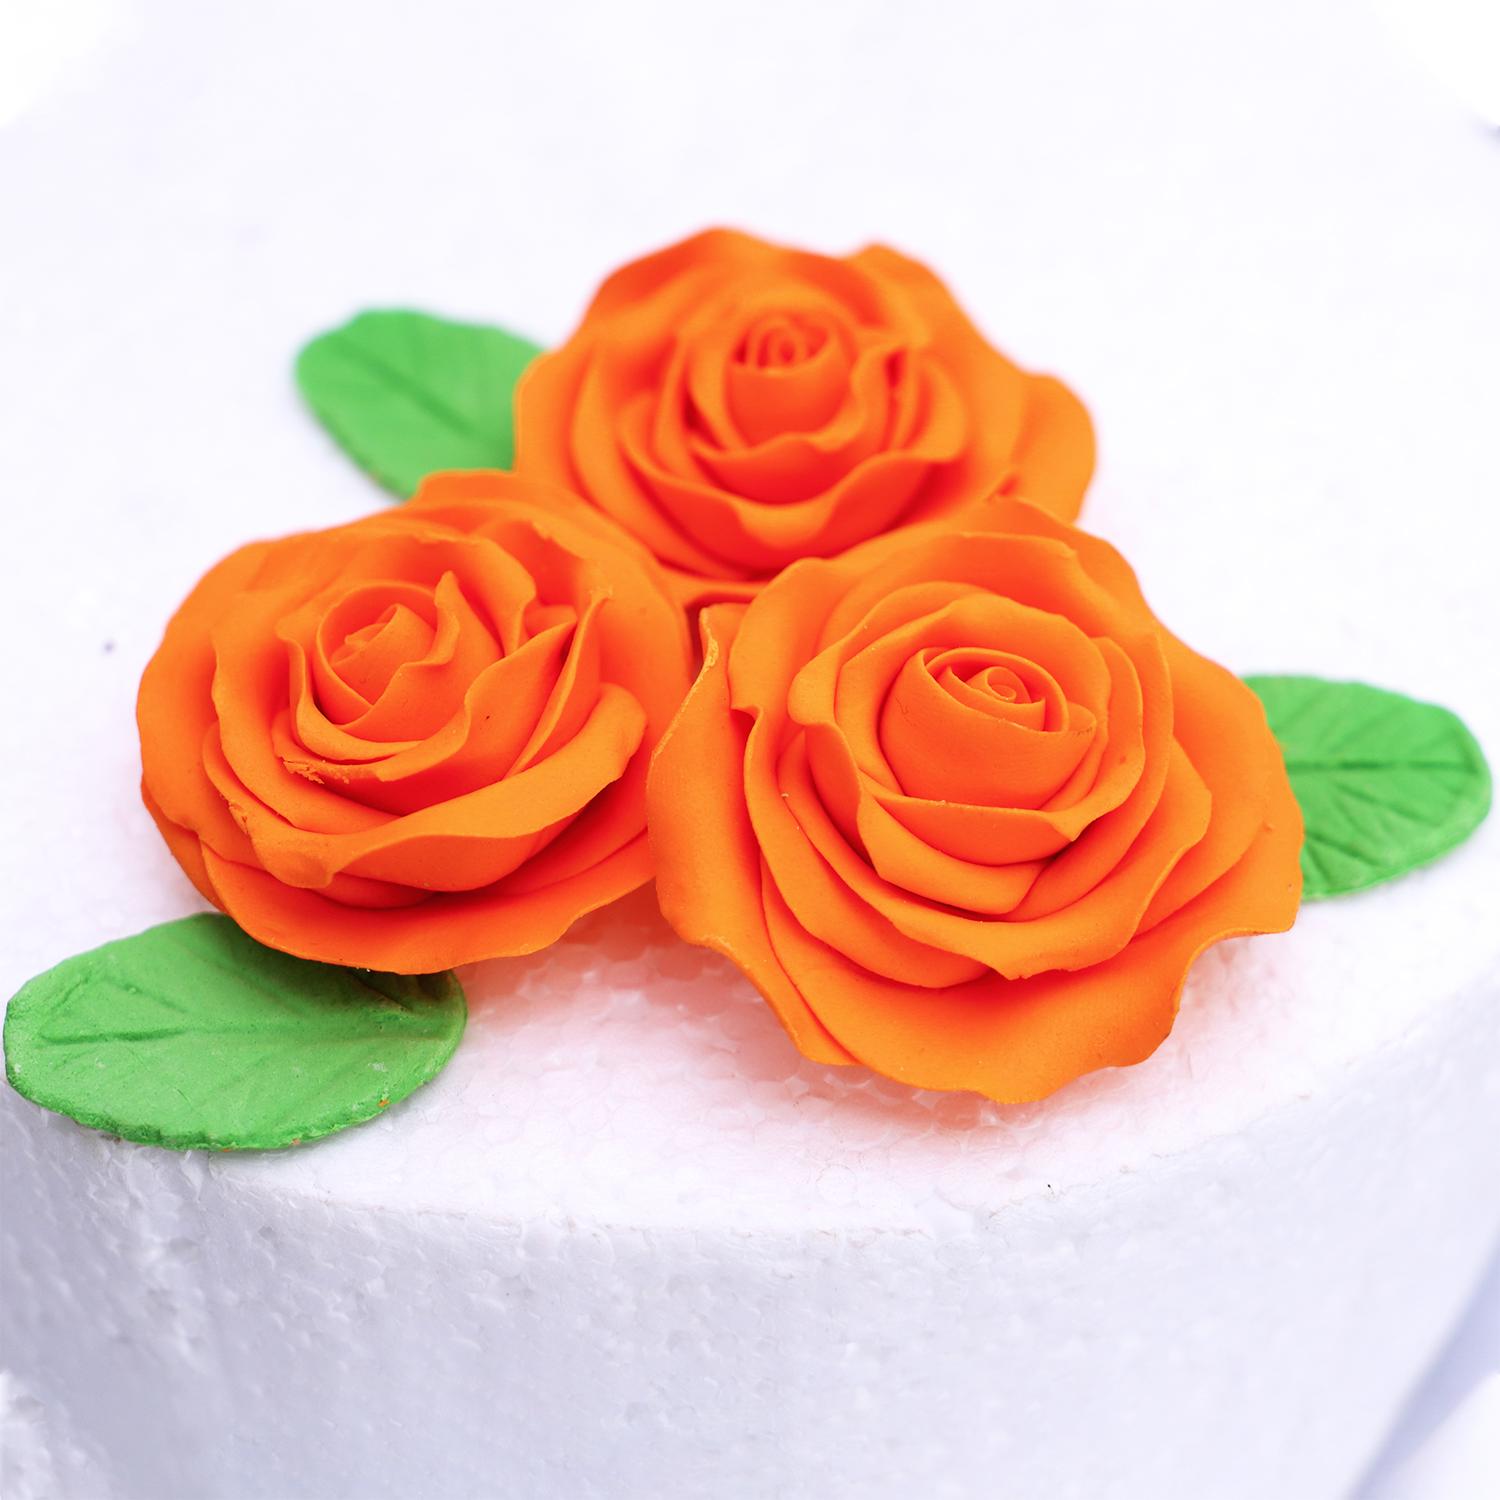 SUPER CAKES BIG ROSE FLOWER ORANGE